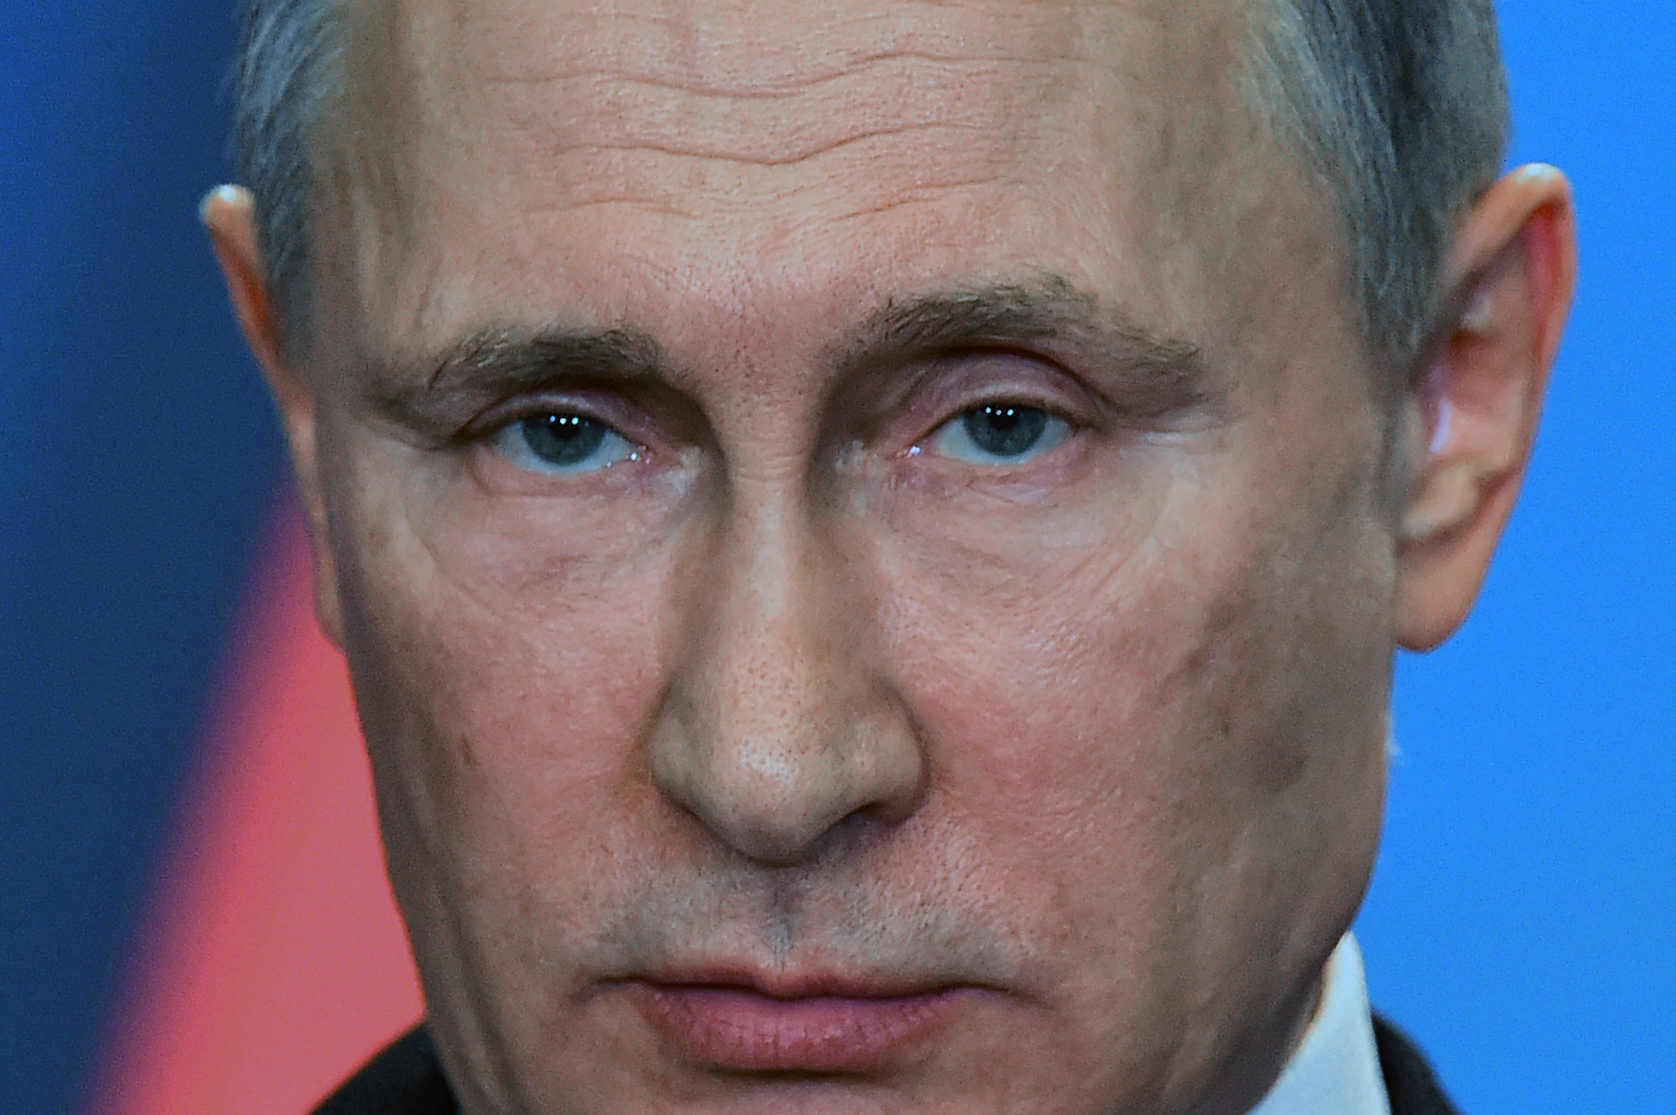 La razón por la que Putin quiere terminar “rápido” la invasión en Ucrania